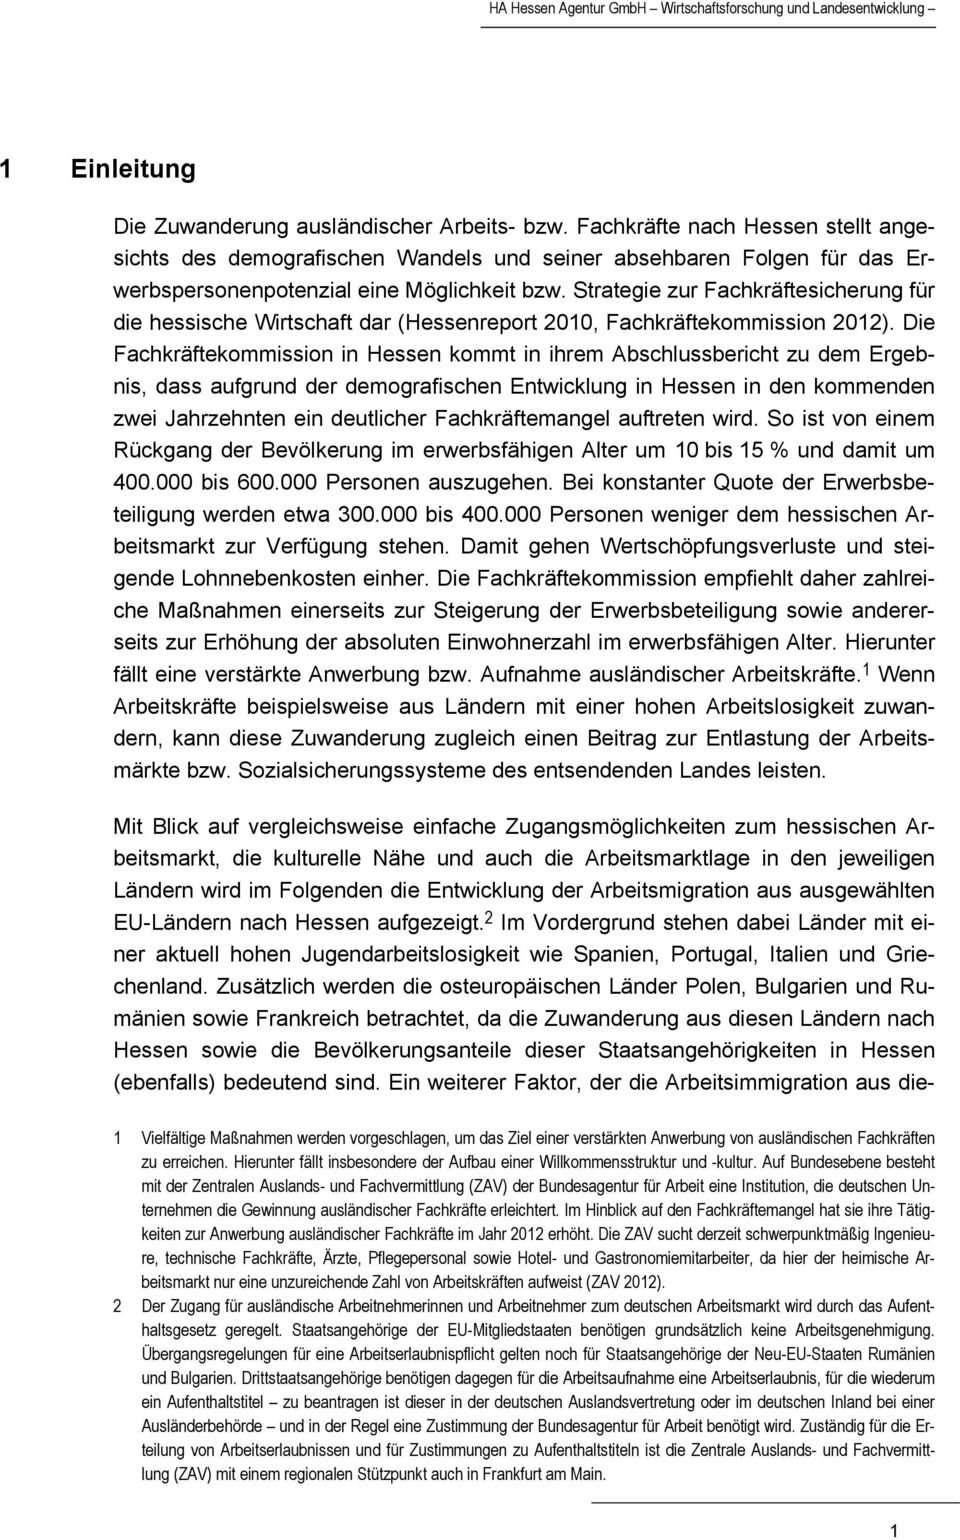 Strategie zur Fachkräftesicherung für die hessische Wirtschaft dar (Hessenreport 2010, Fachkräftekommission 2012).